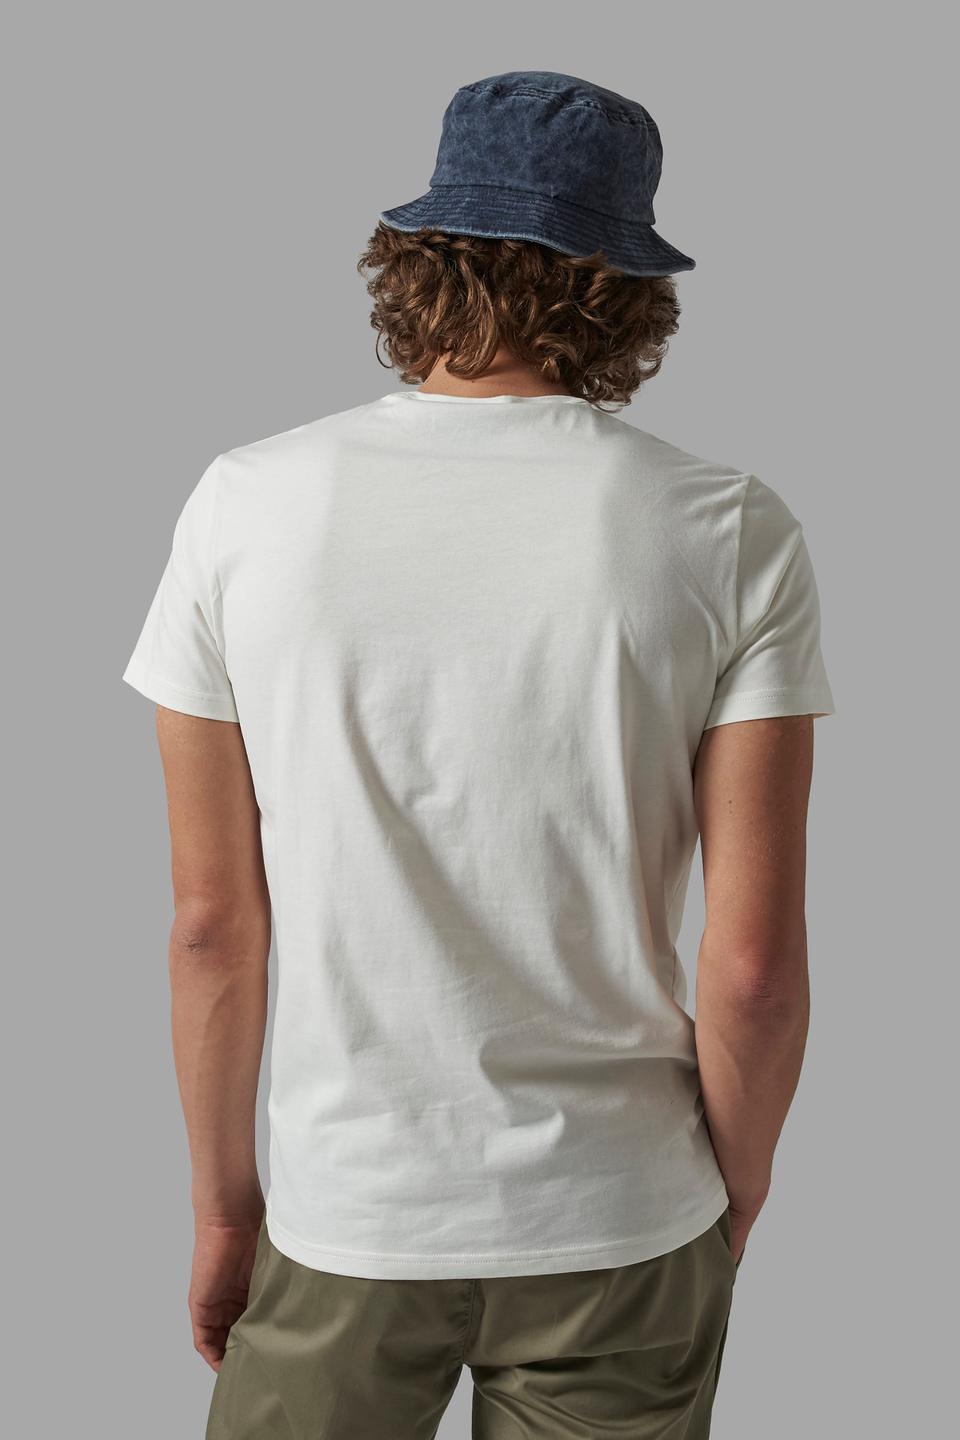 T-shirt da uomo regular fit - La Martina - Official Online Shop